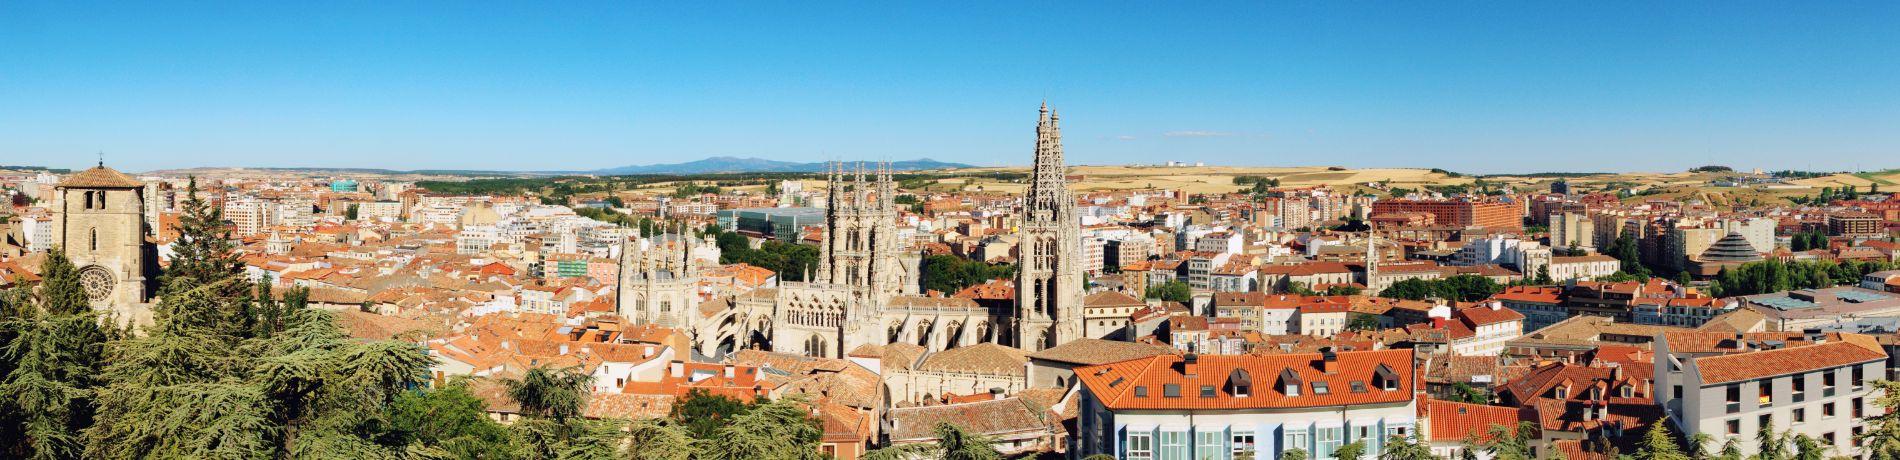 Burgos, Castilia leon | Eden viaggi